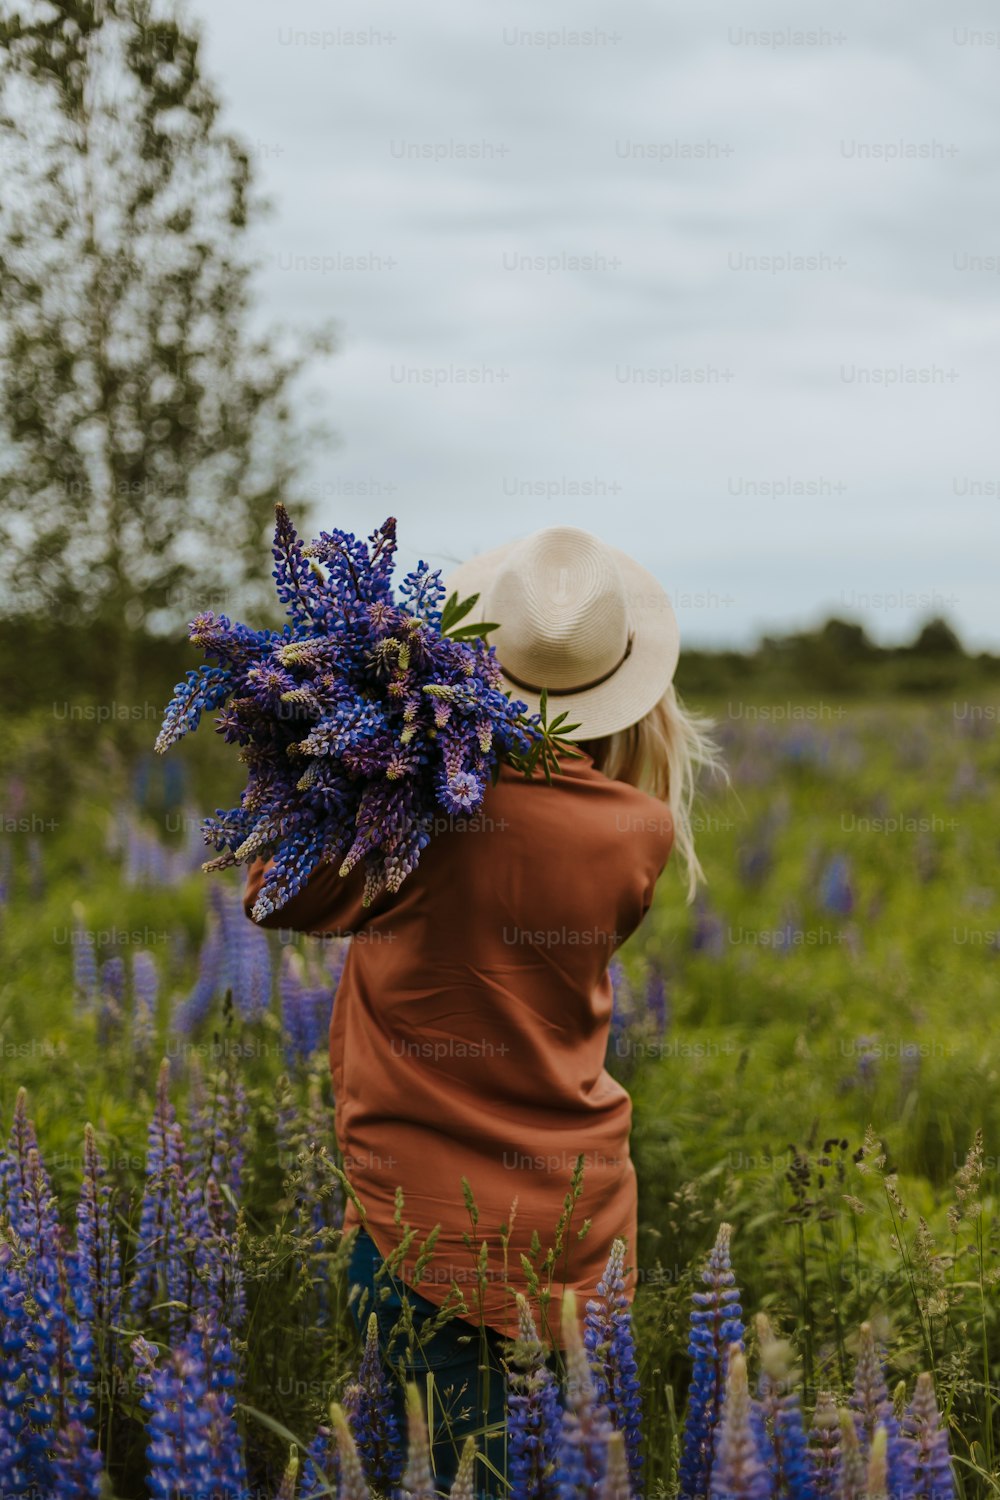 une personne portant un chapeau dans un champ de fleurs